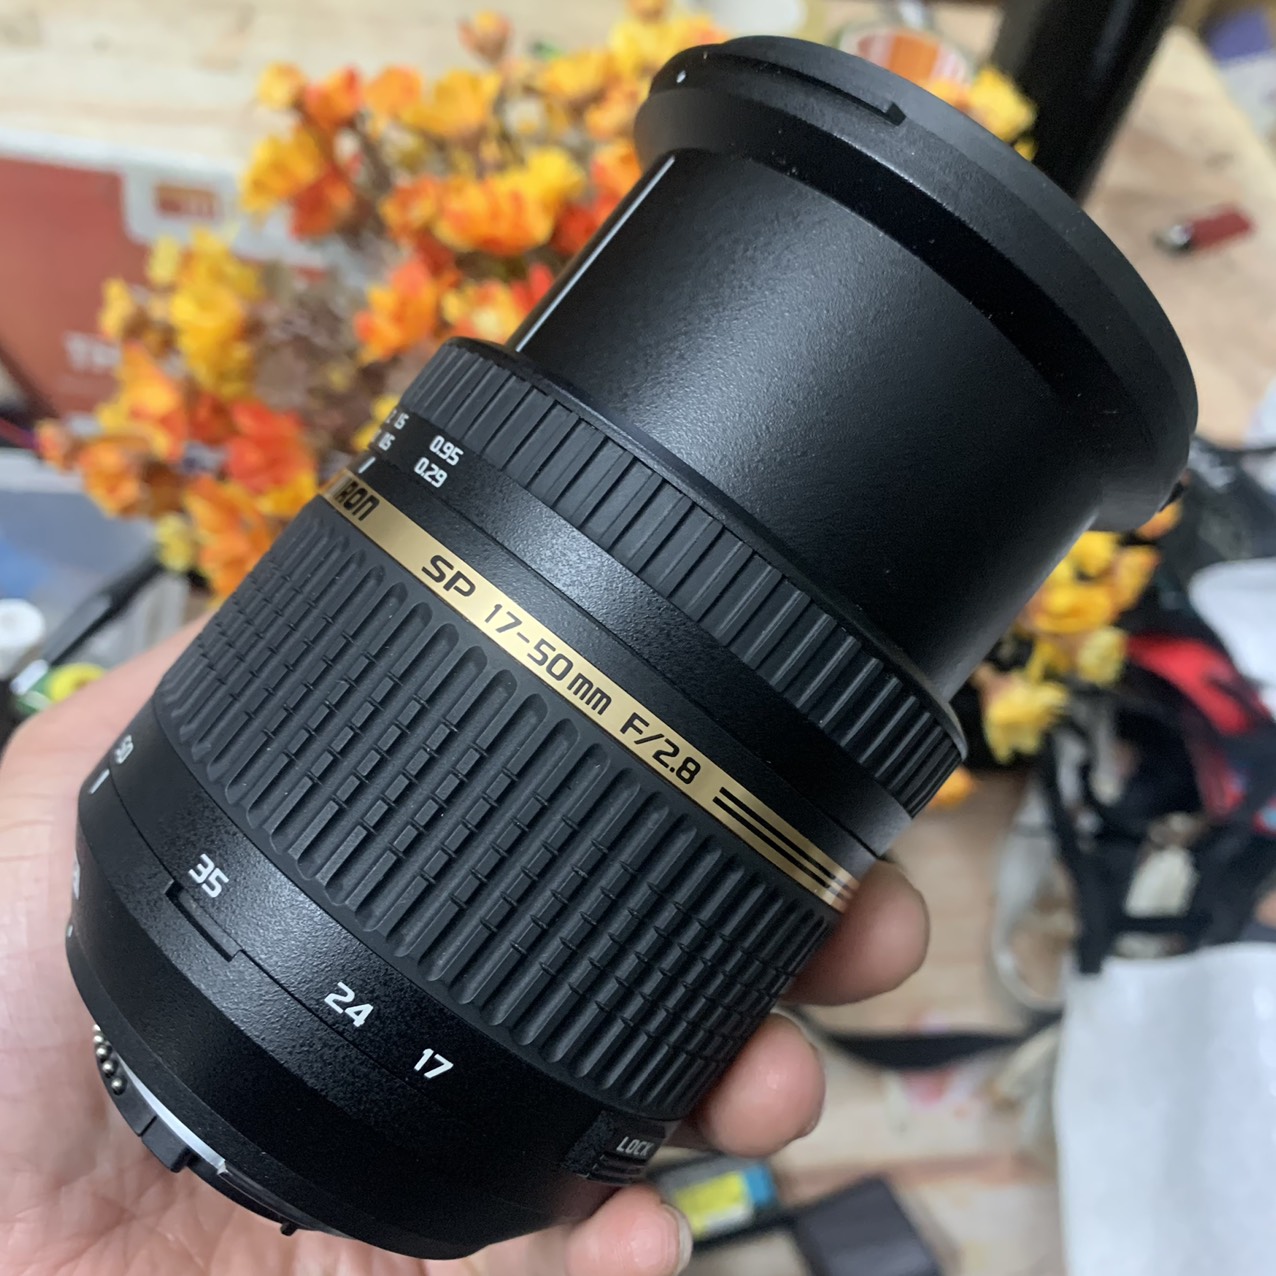 Ống kính Tamron 17-50 f2.8 VC cho máy ảnh Nikon Crop